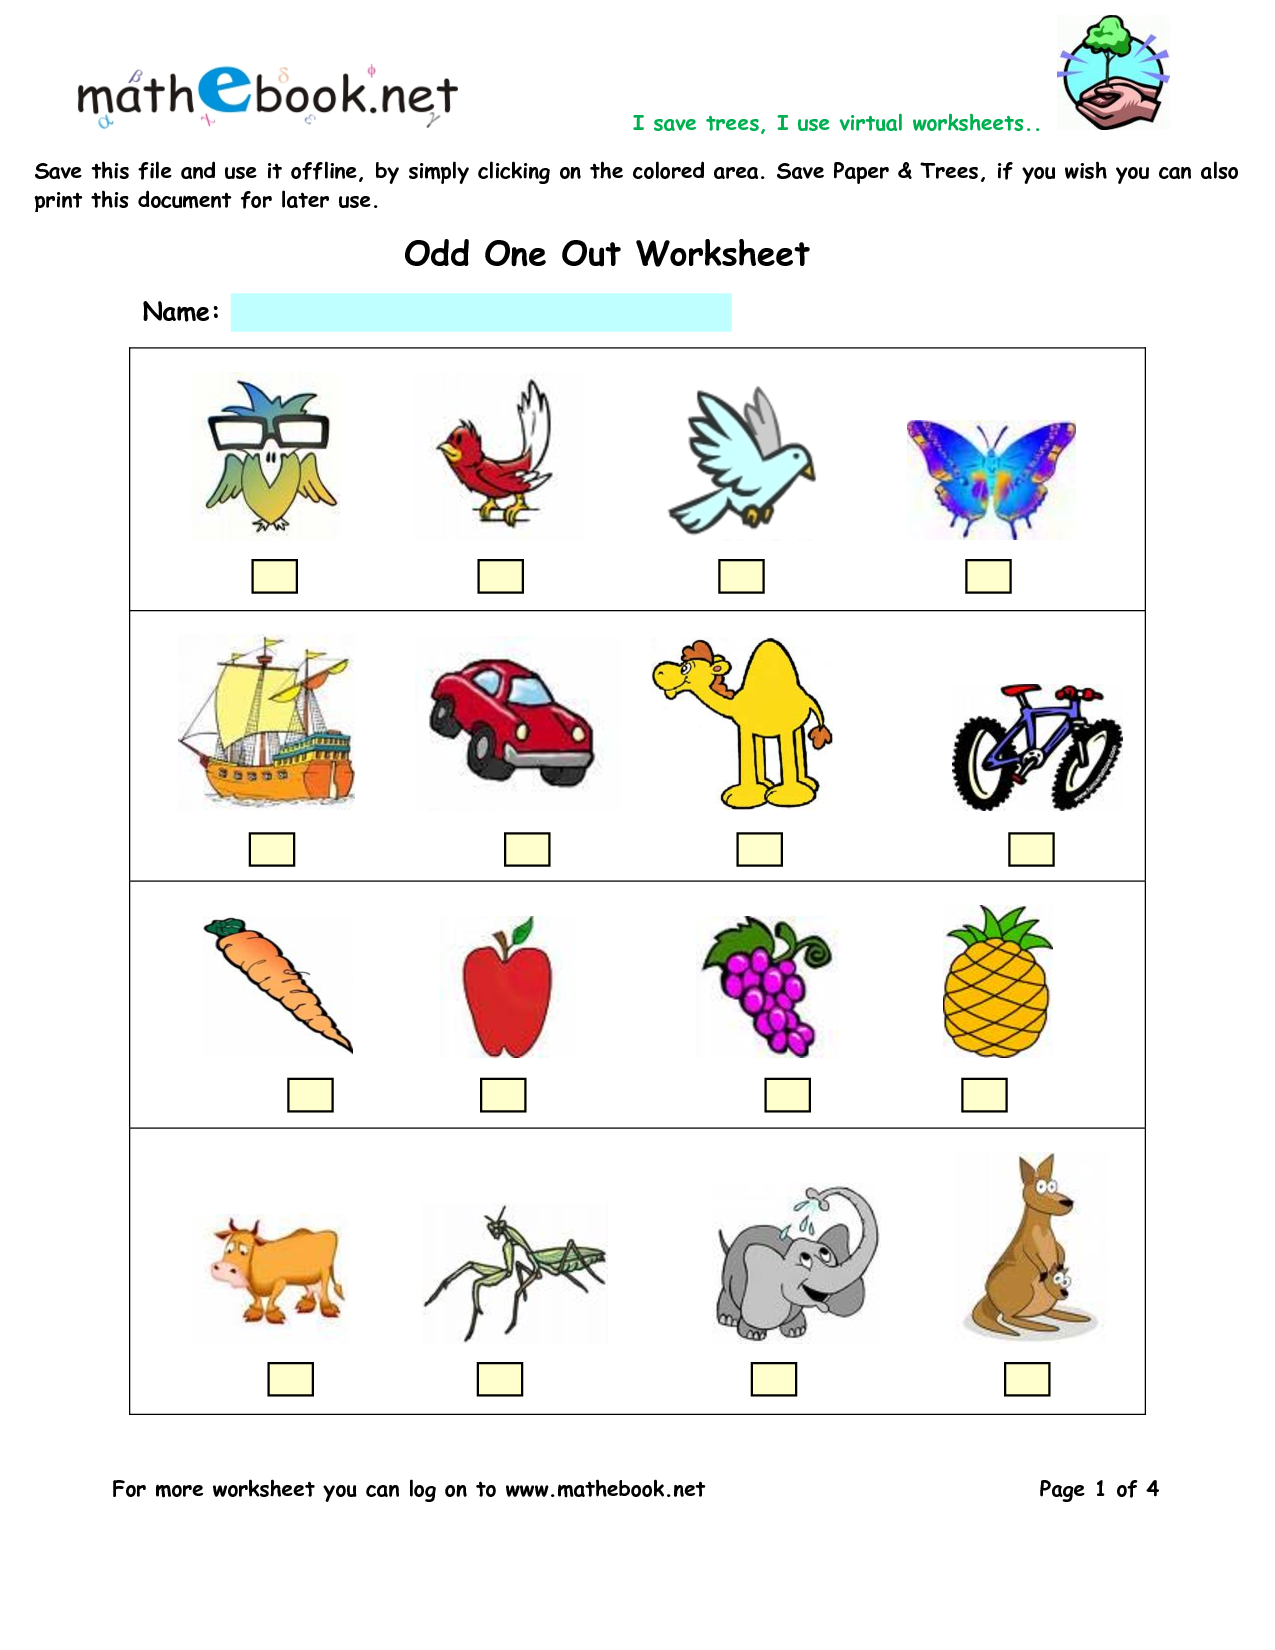 kindergarten worksheets | Preschool worksheets | Printables for kids | #49 Free ...1275 x 1650